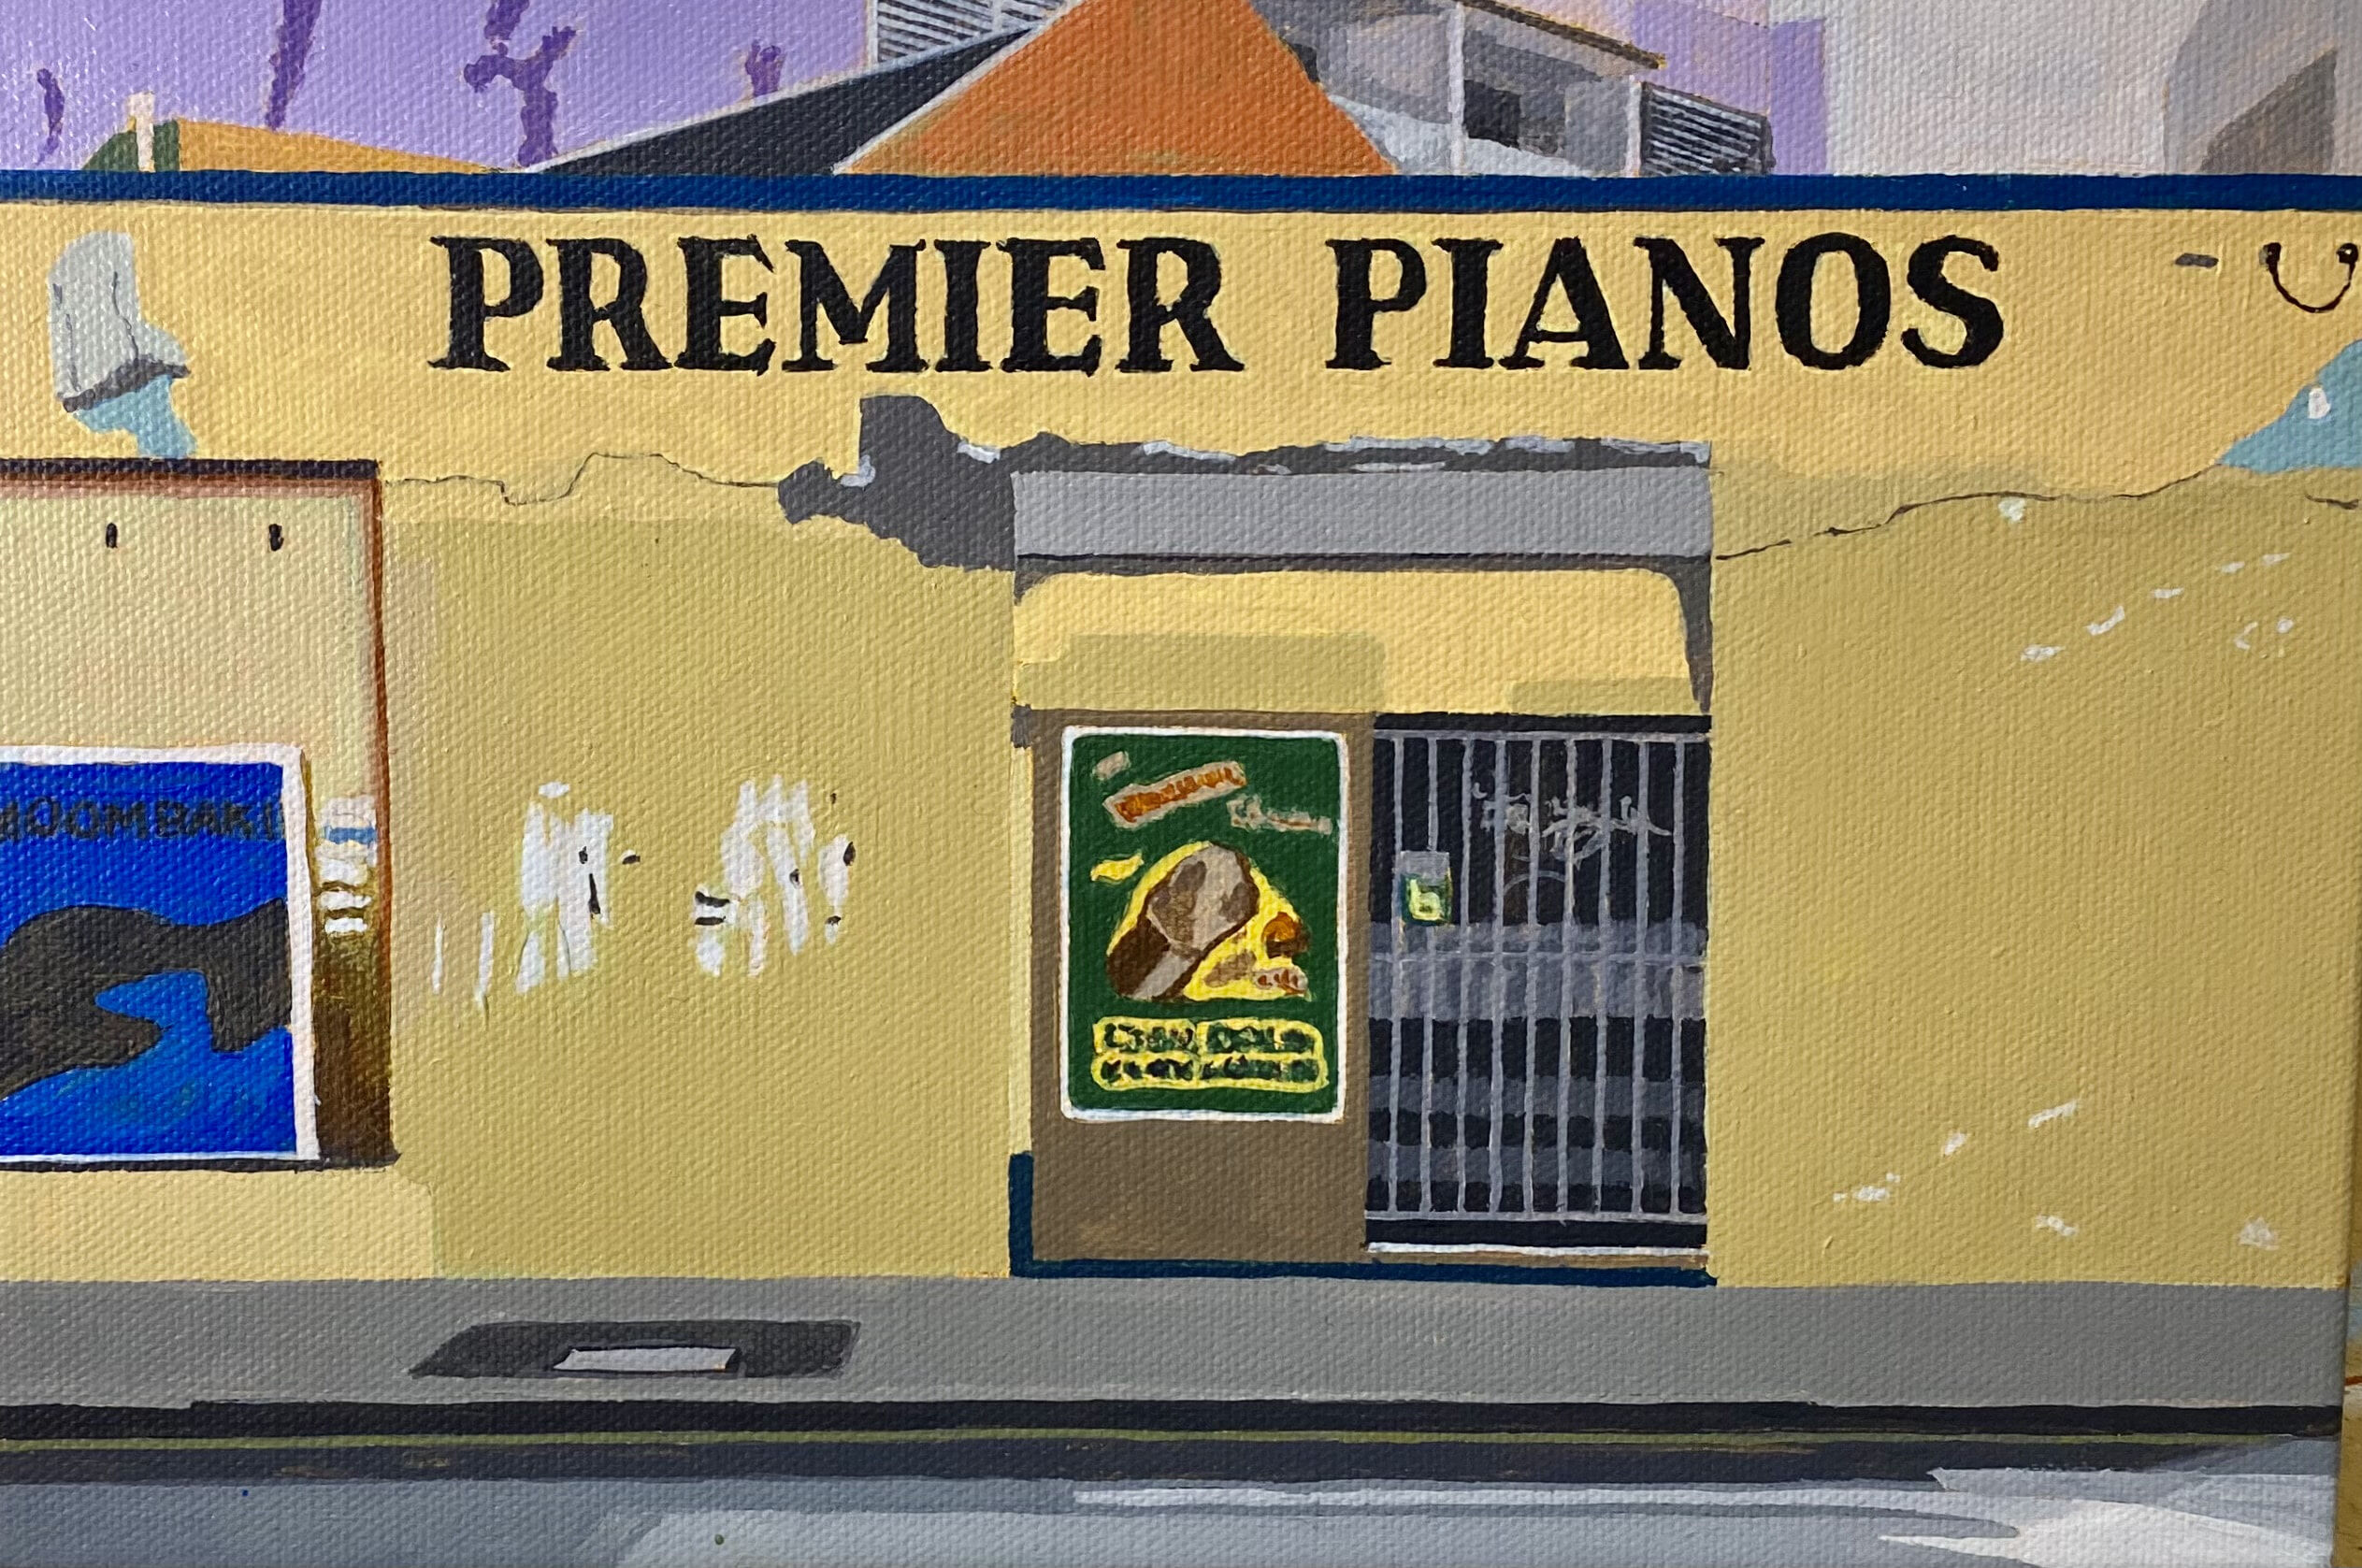 Oremier Pianos, Fremantle